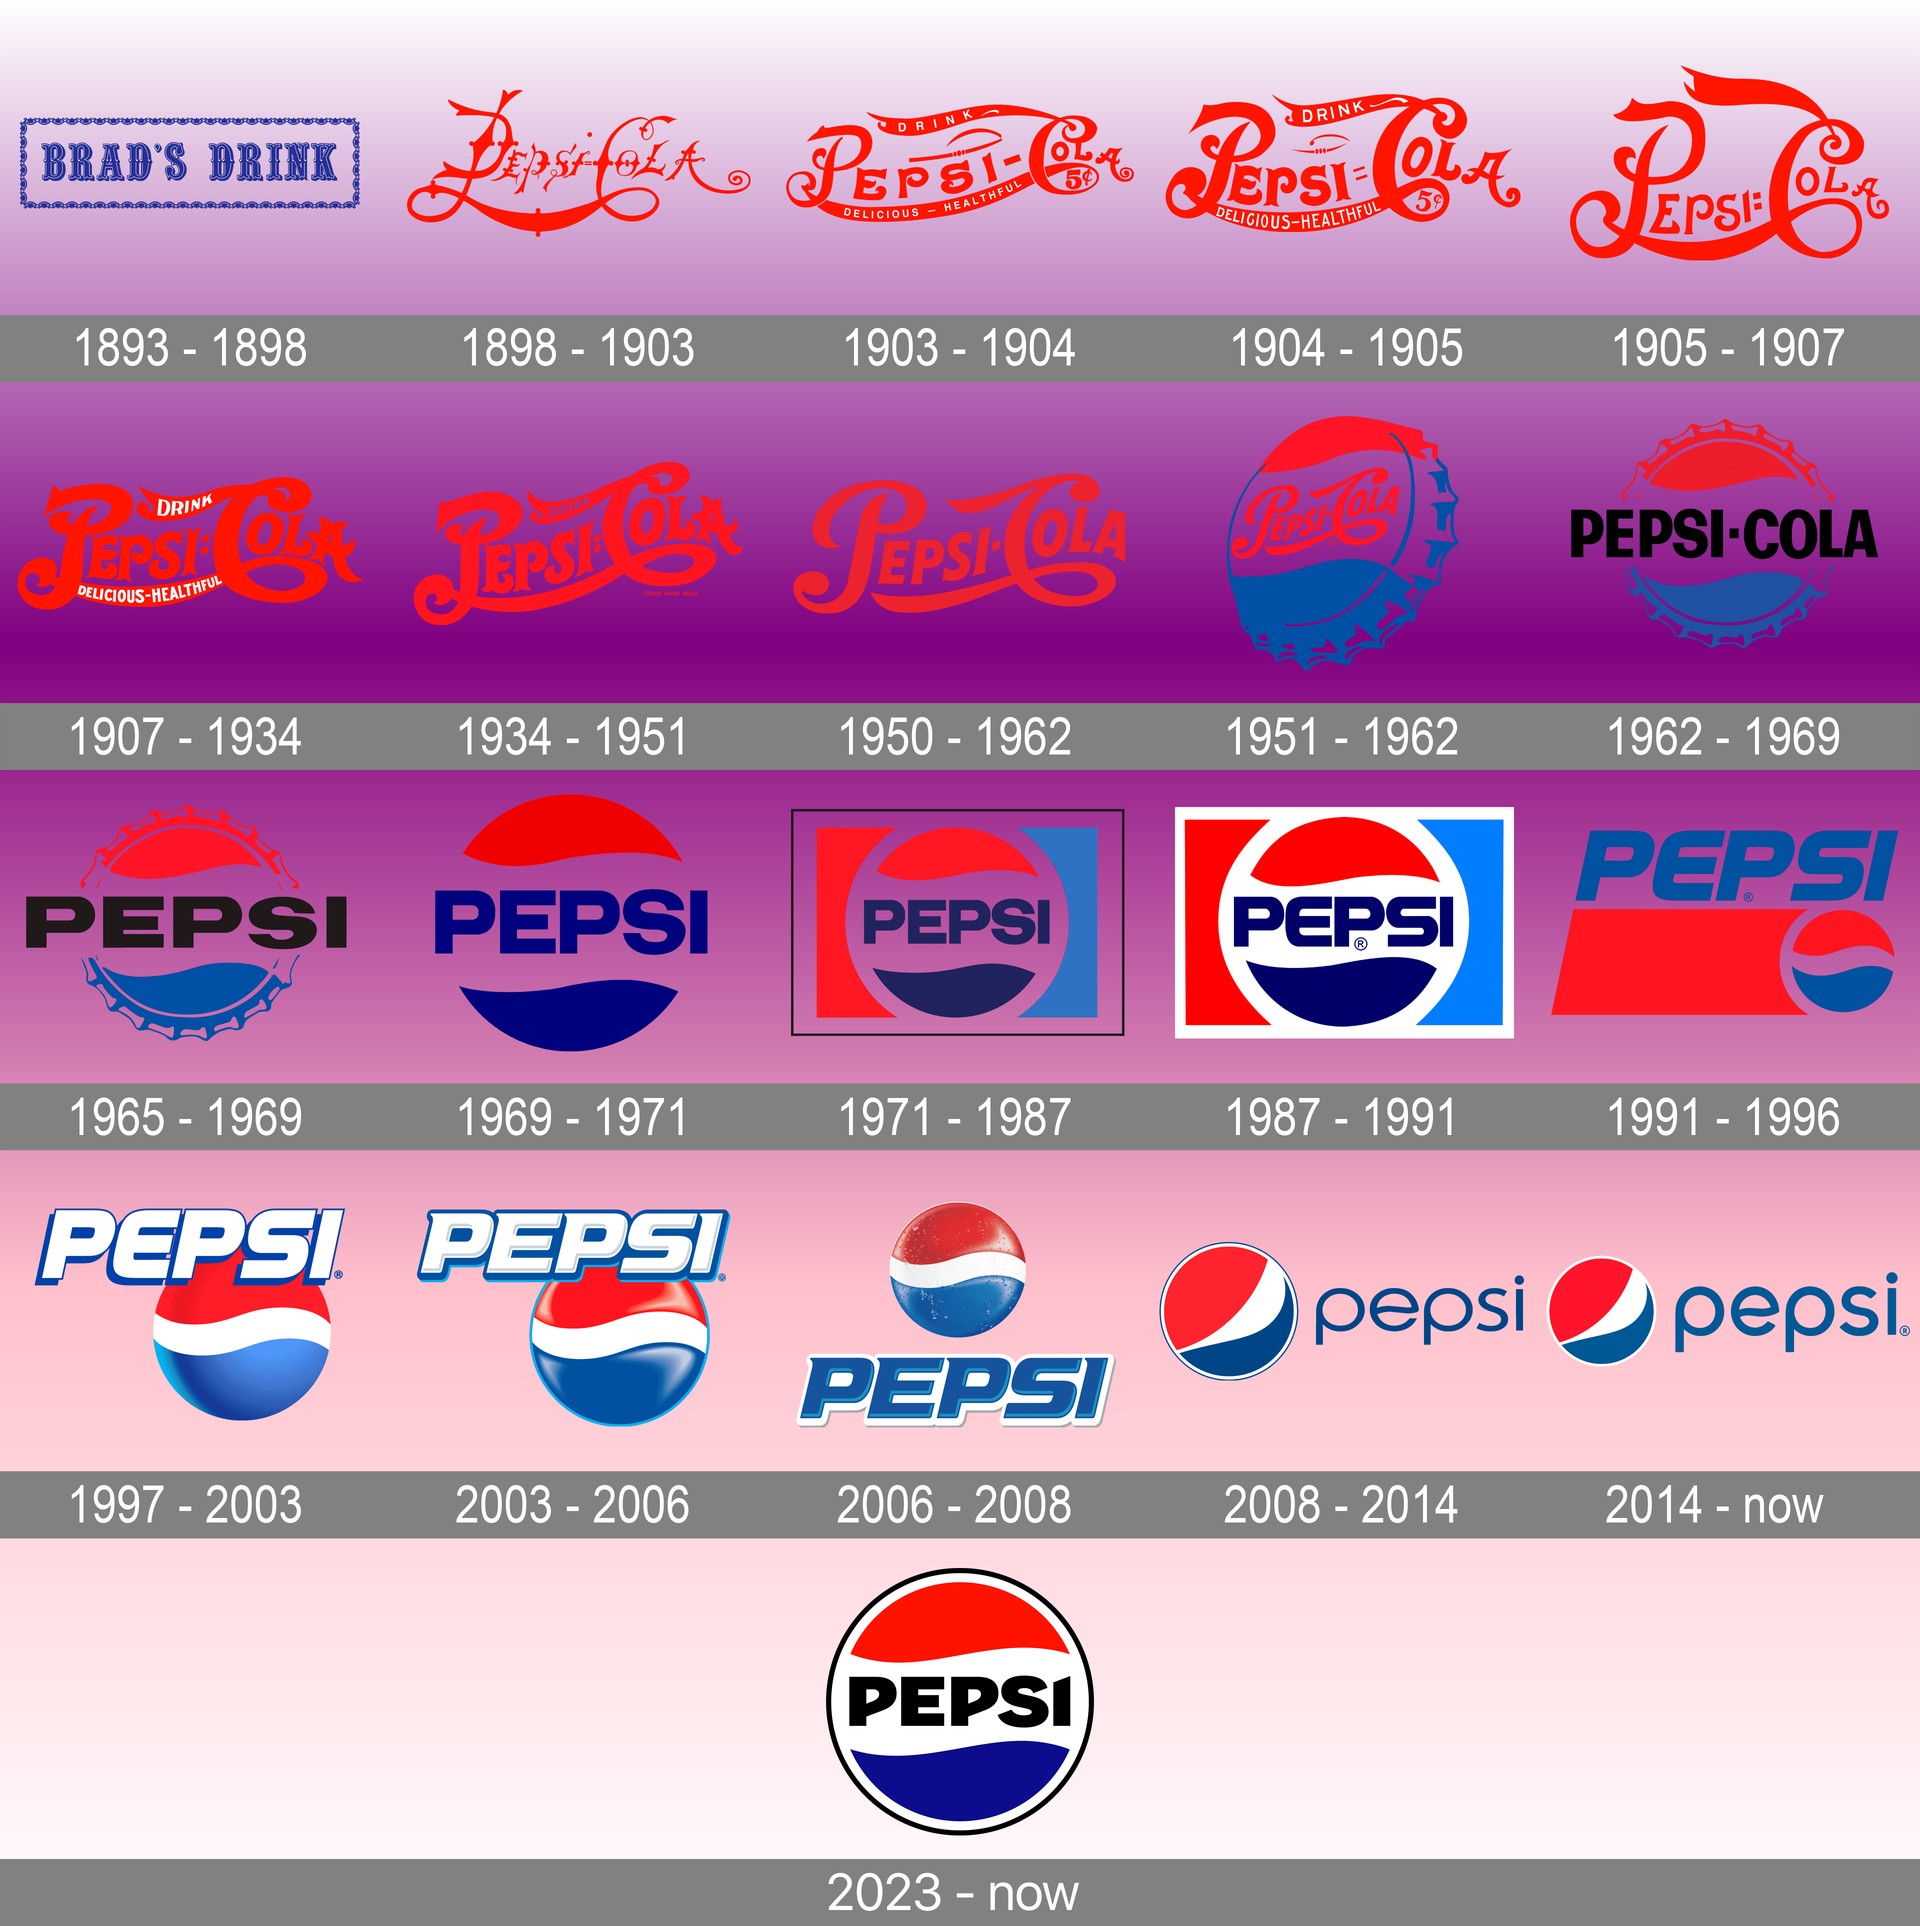 Pepsi new logo